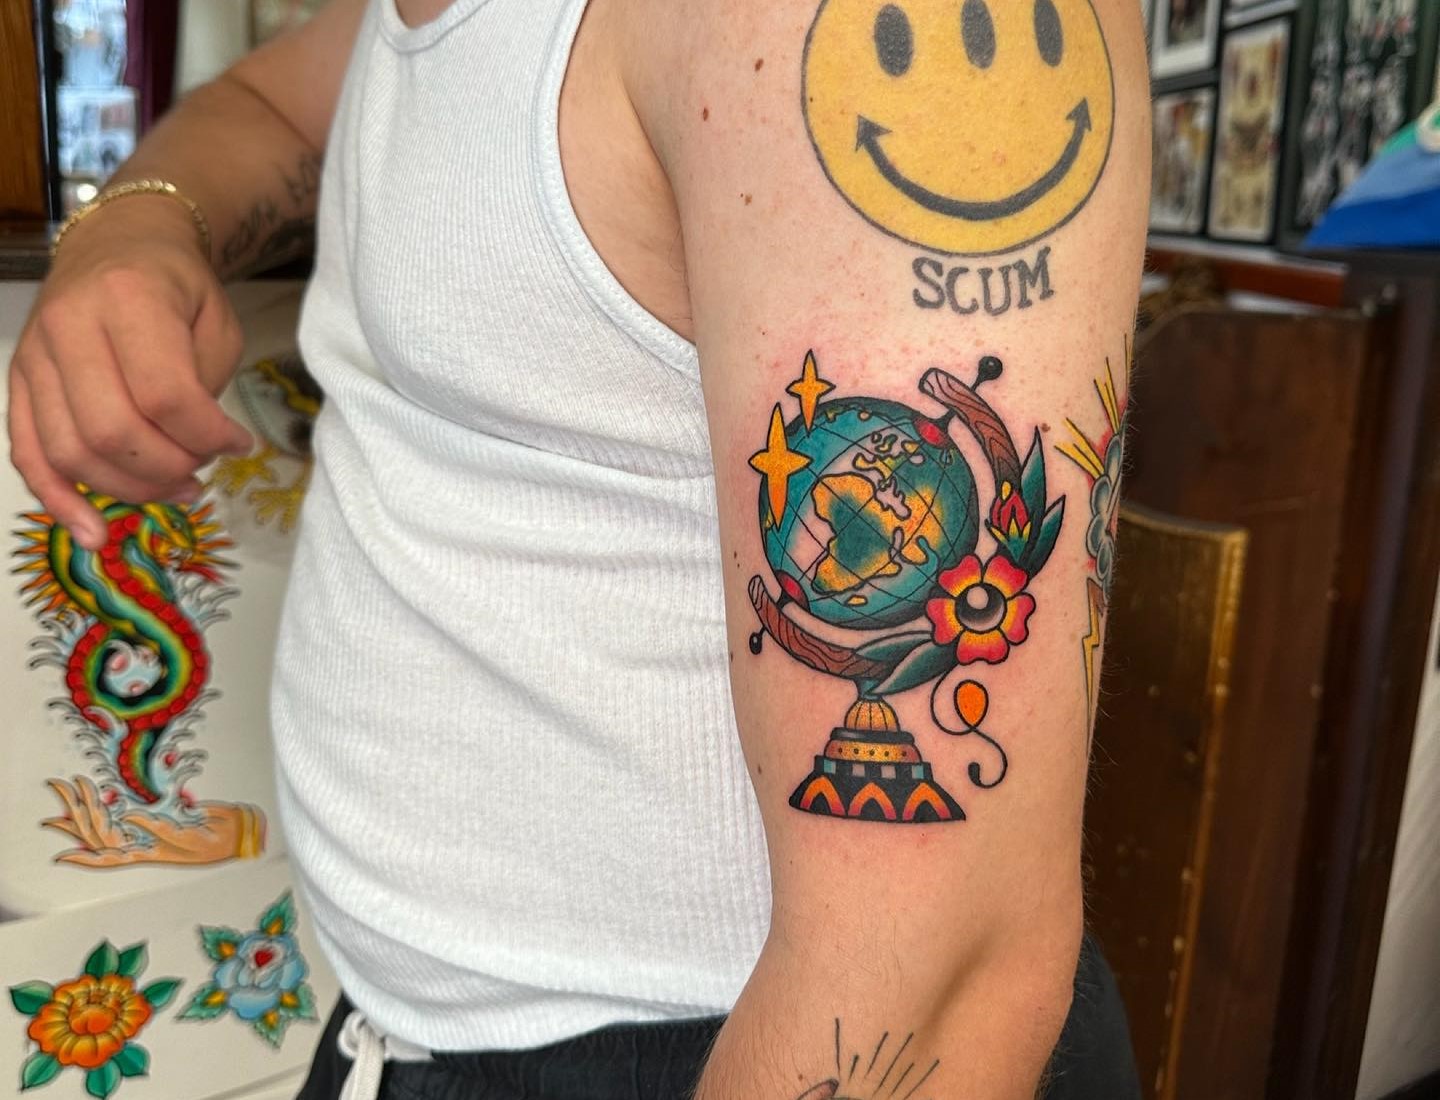 Globe tattoo on the upper back - Tattoogrid.net